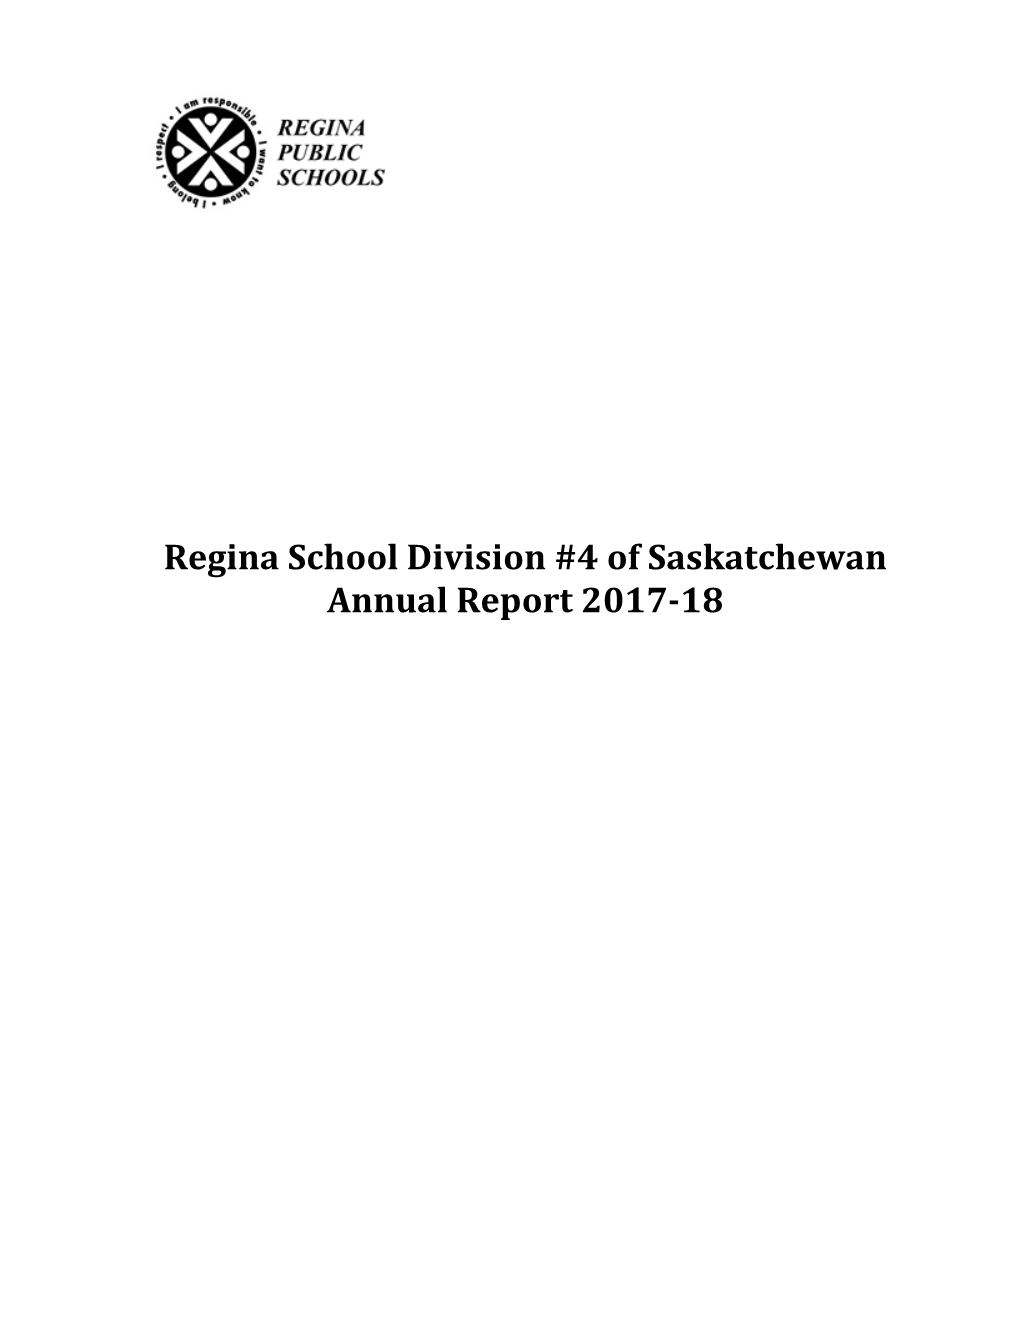 Regina School Division #4 of Saskatchewan Annual Report 2017-18